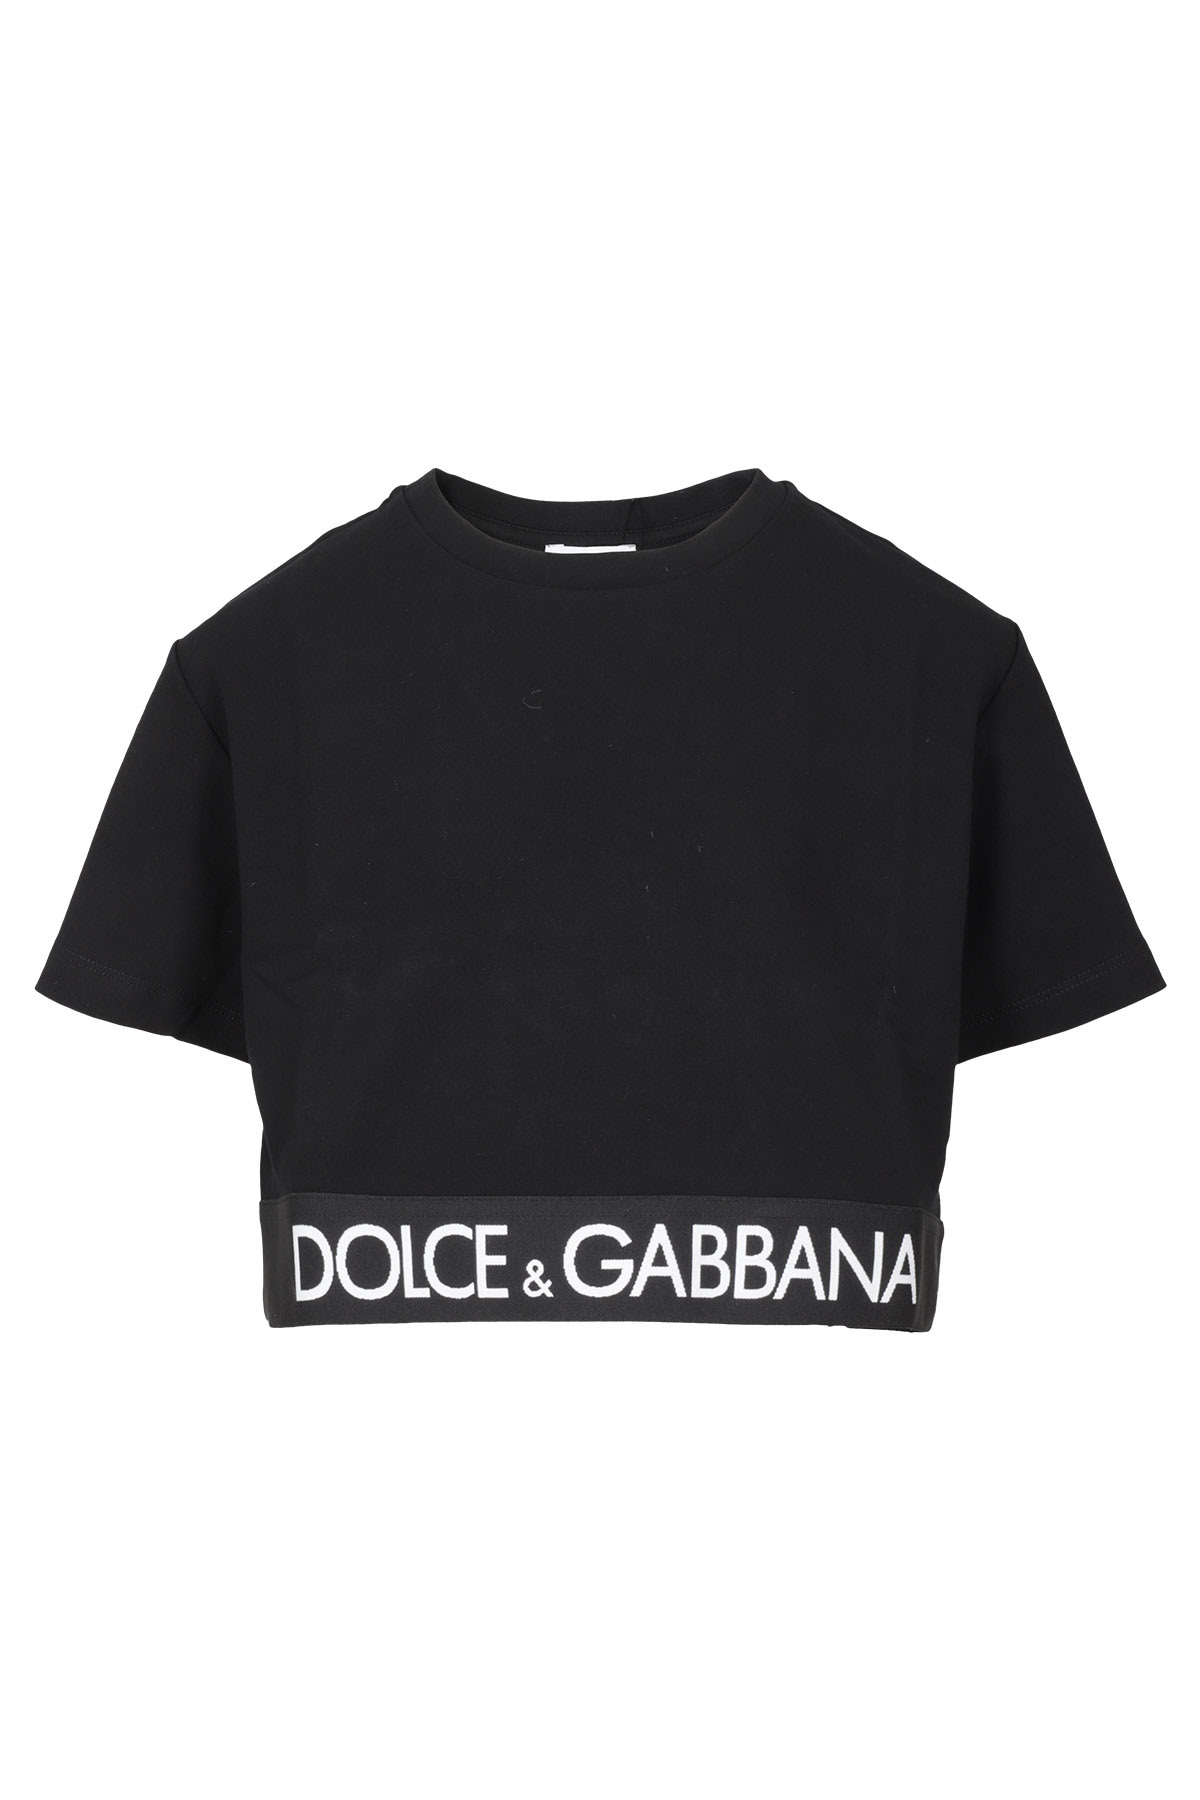 Dolce & Gabbana Corto